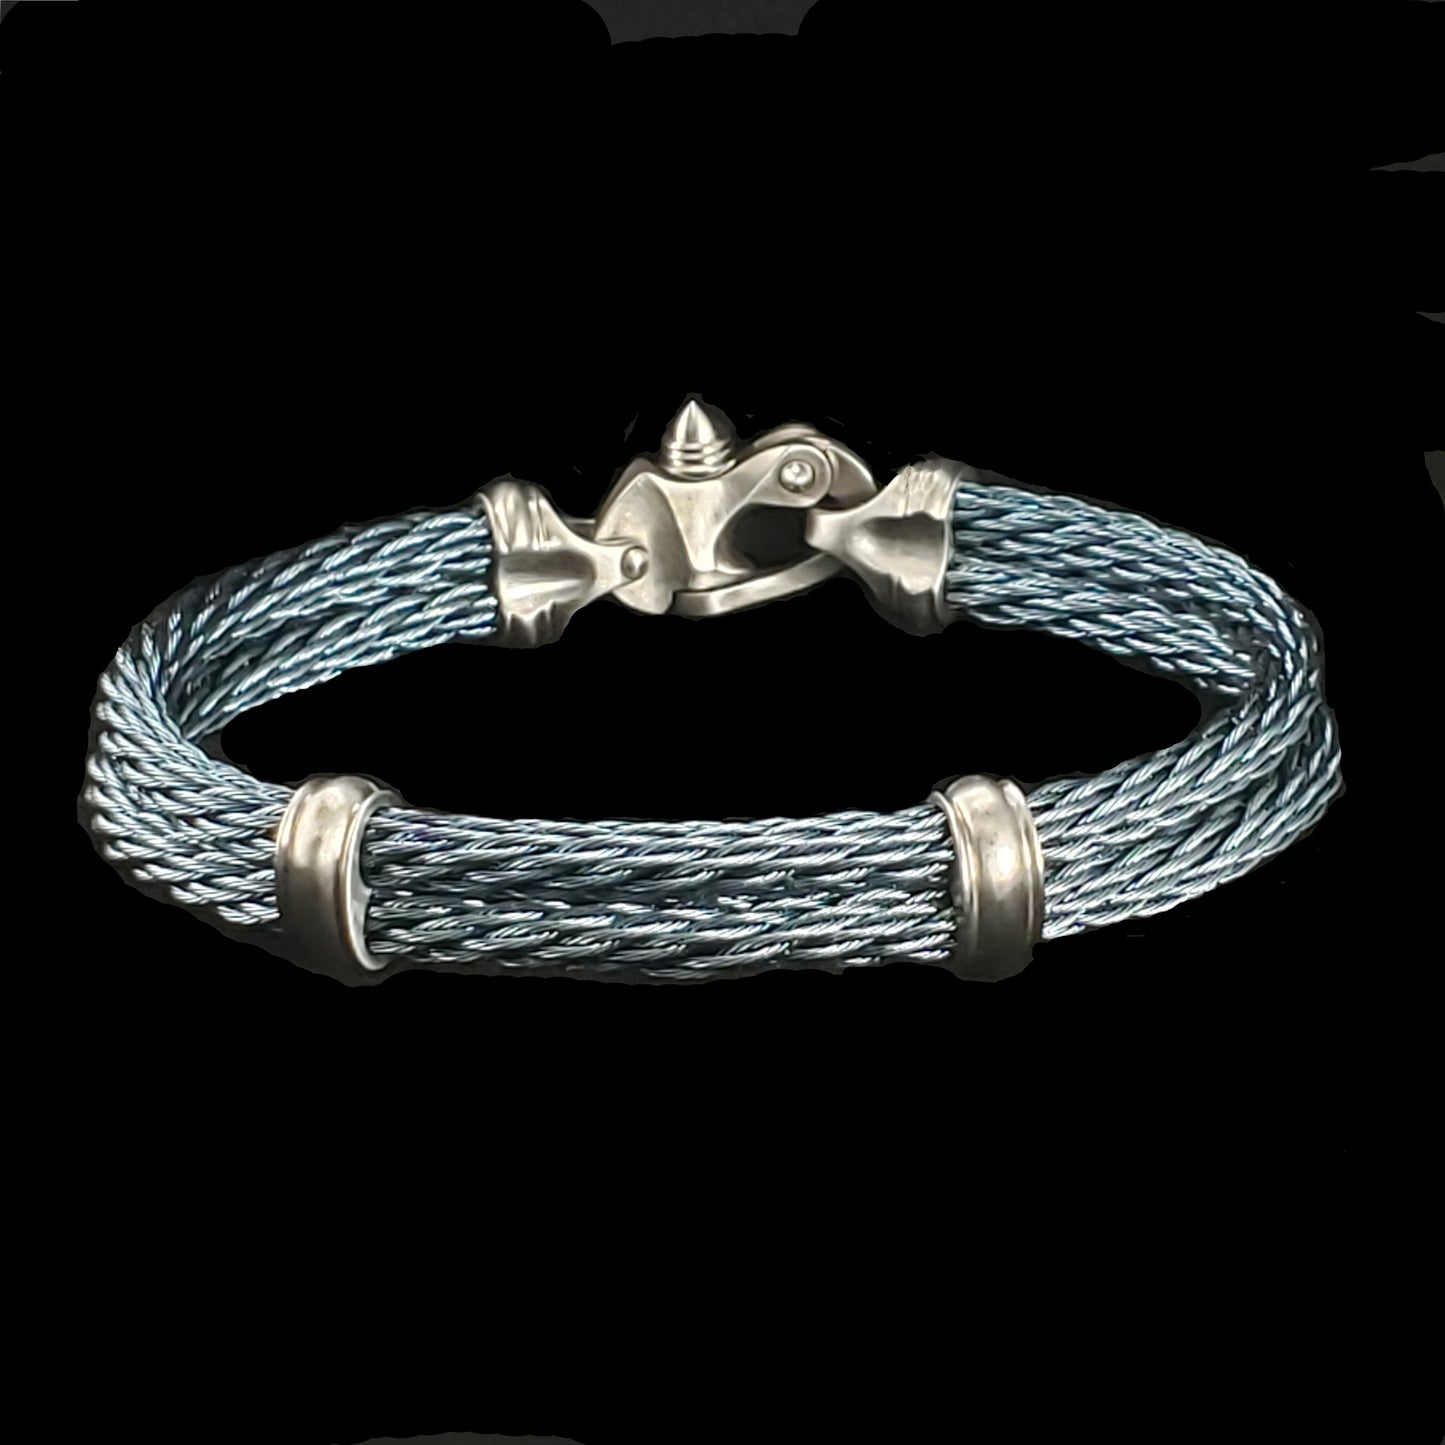 PVD Nouveau Braid® Cable Bracelet with Mariner's Clasp®